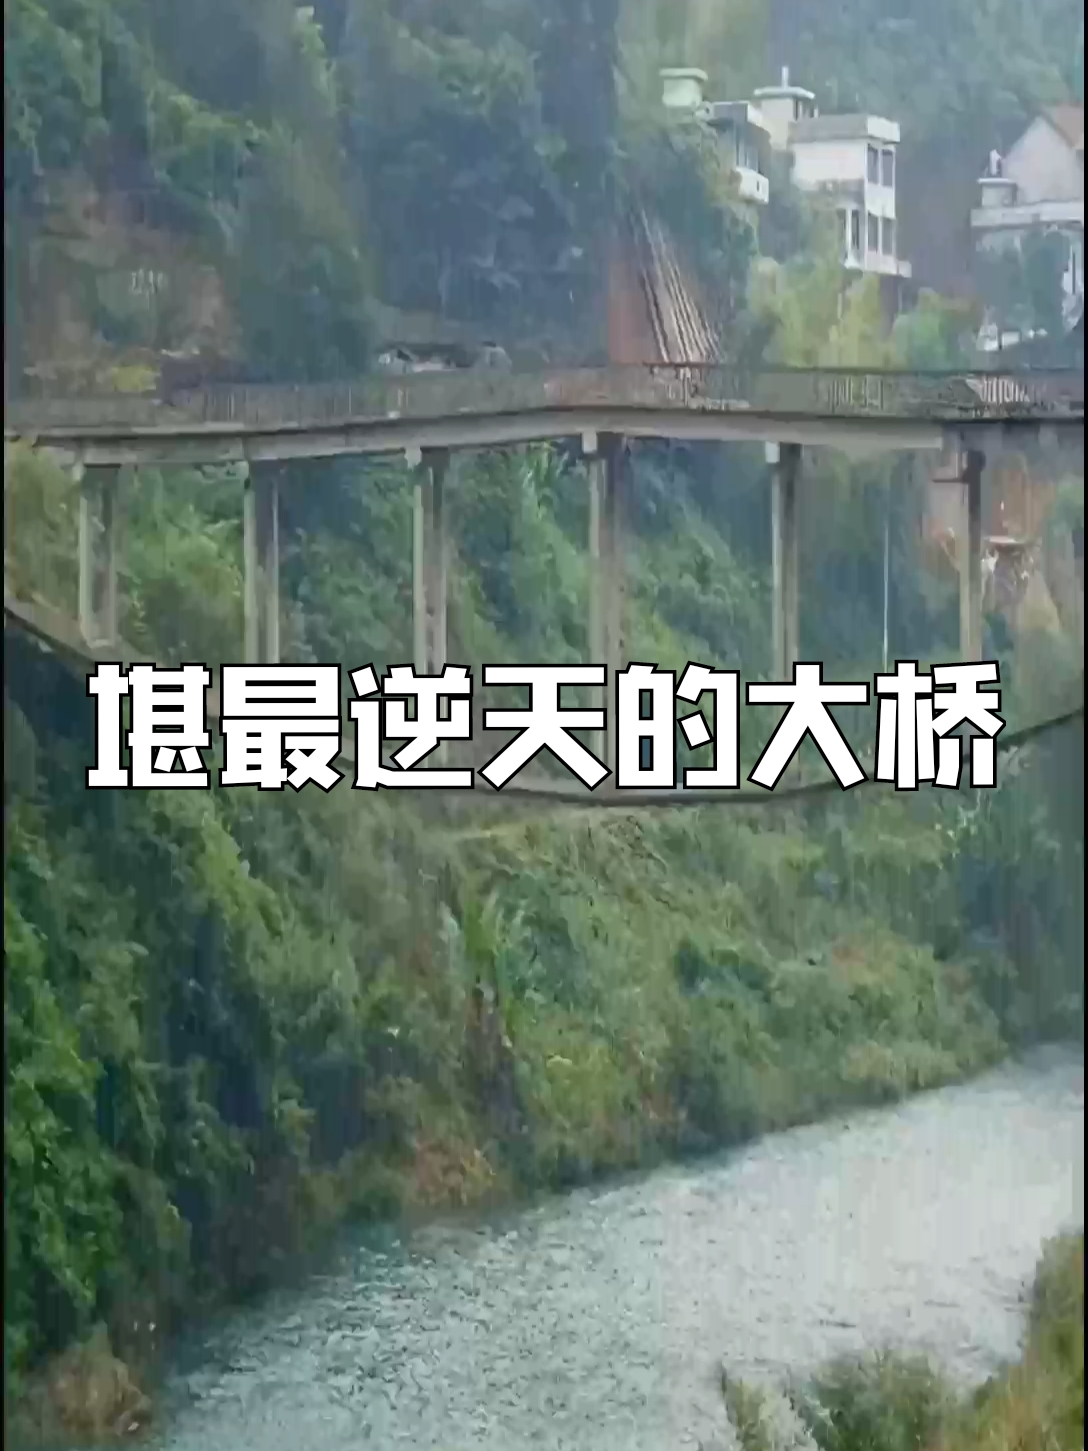 堪最逆天的大桥#淘金桥 #伟大桥梁